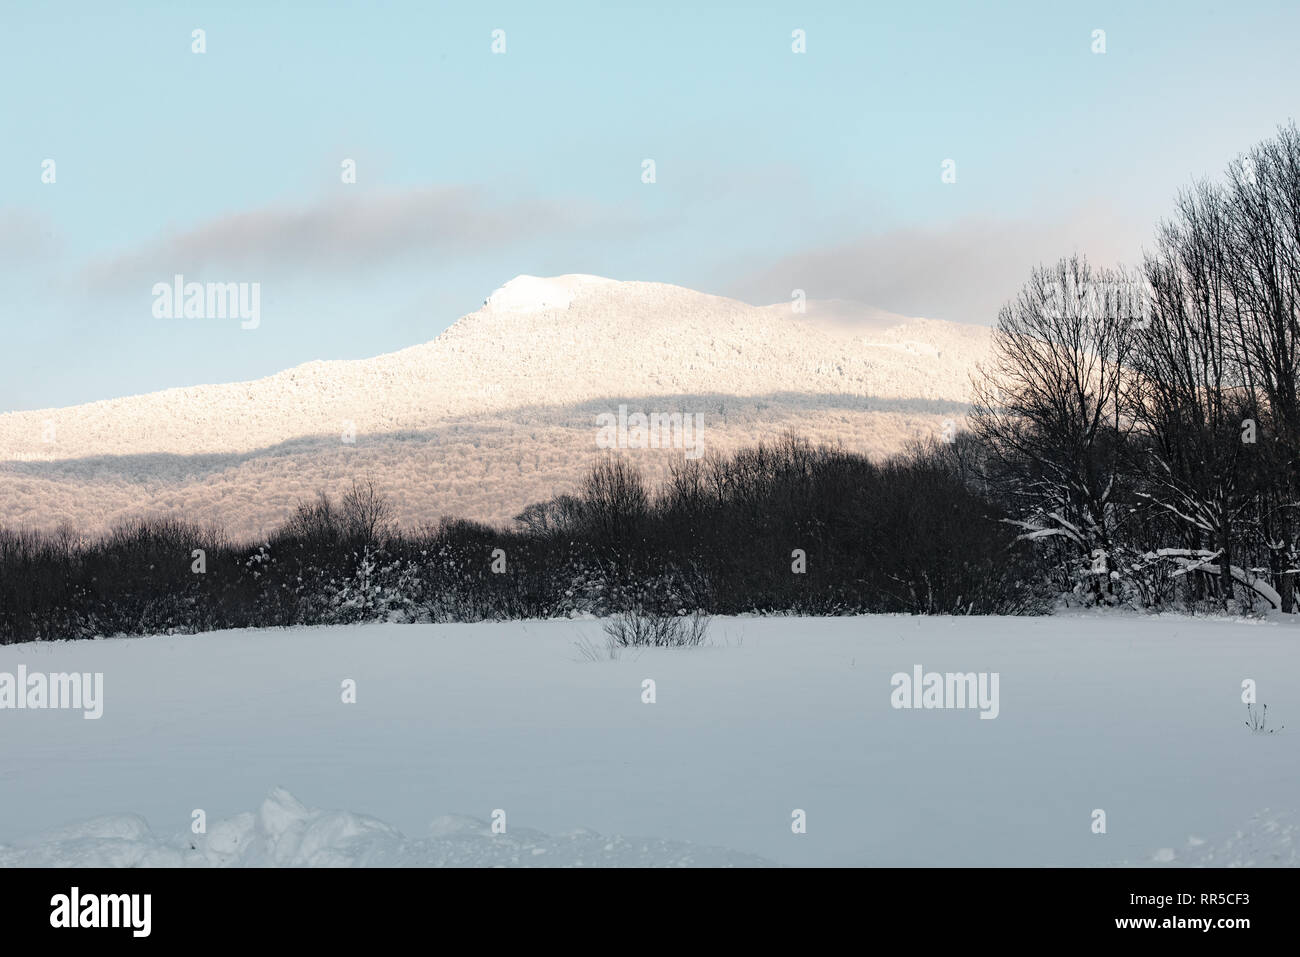 Bieszczady Mountains. A view over Hnatowe Berdo peak of Połonina Wetlińska range. winter snowy landscape. Snow-capped peak. Stock Photo